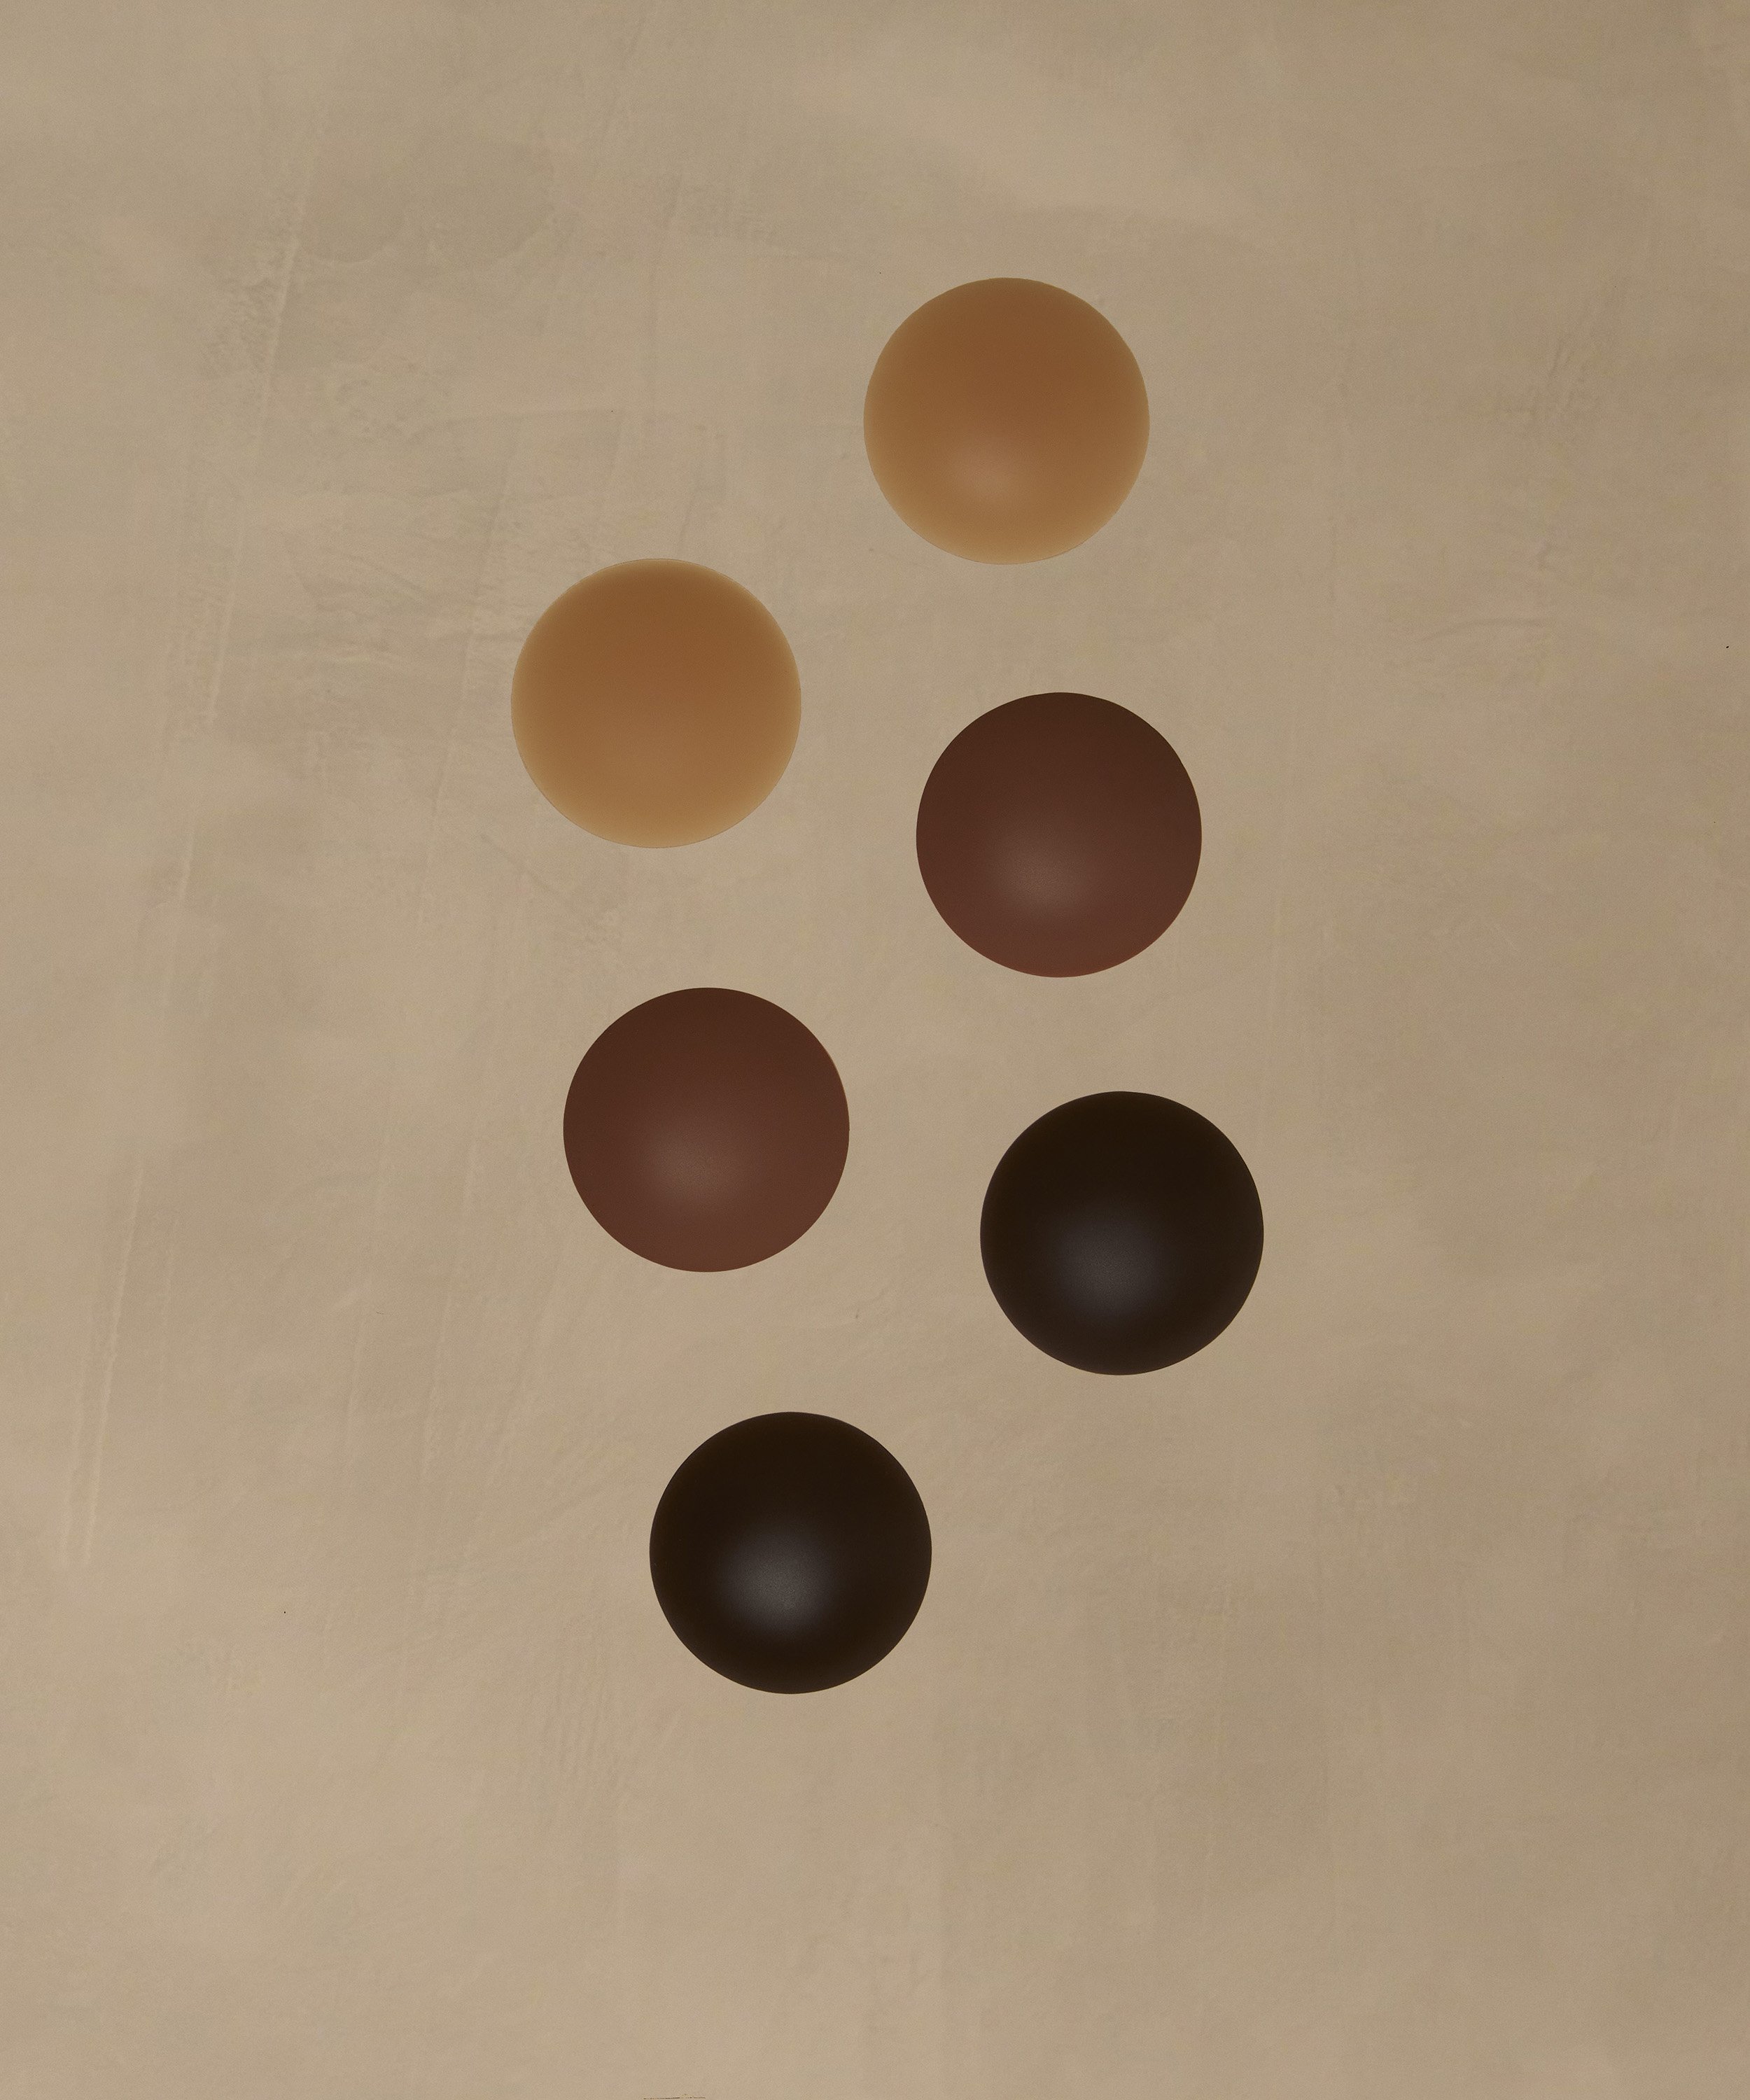 Brystvorteskjulere af silikone, Brown, main